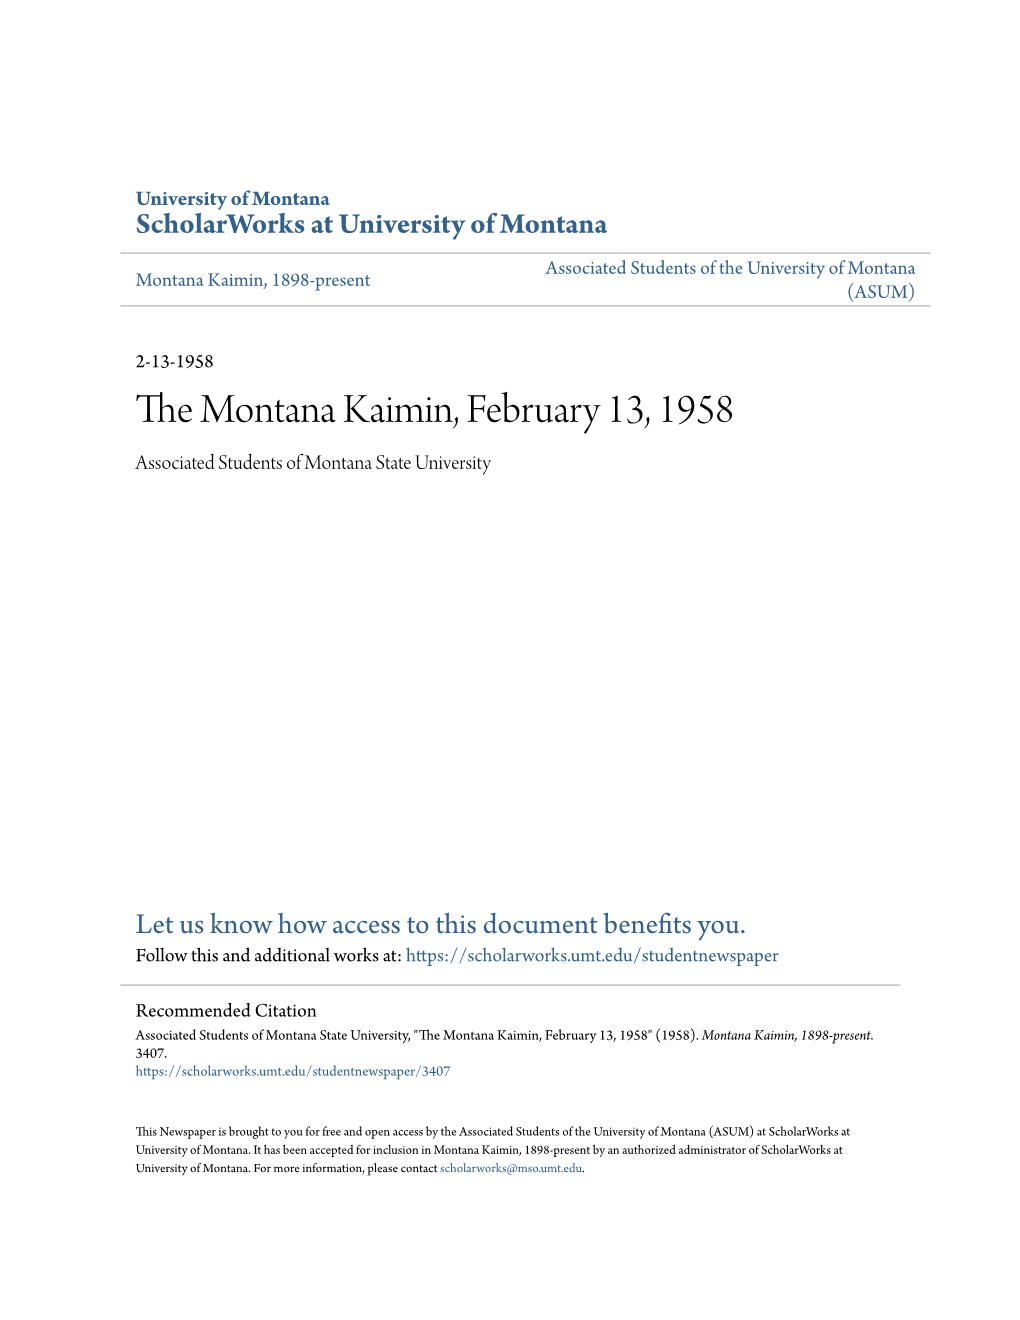 The Montana Kaimin, February 13, 1958